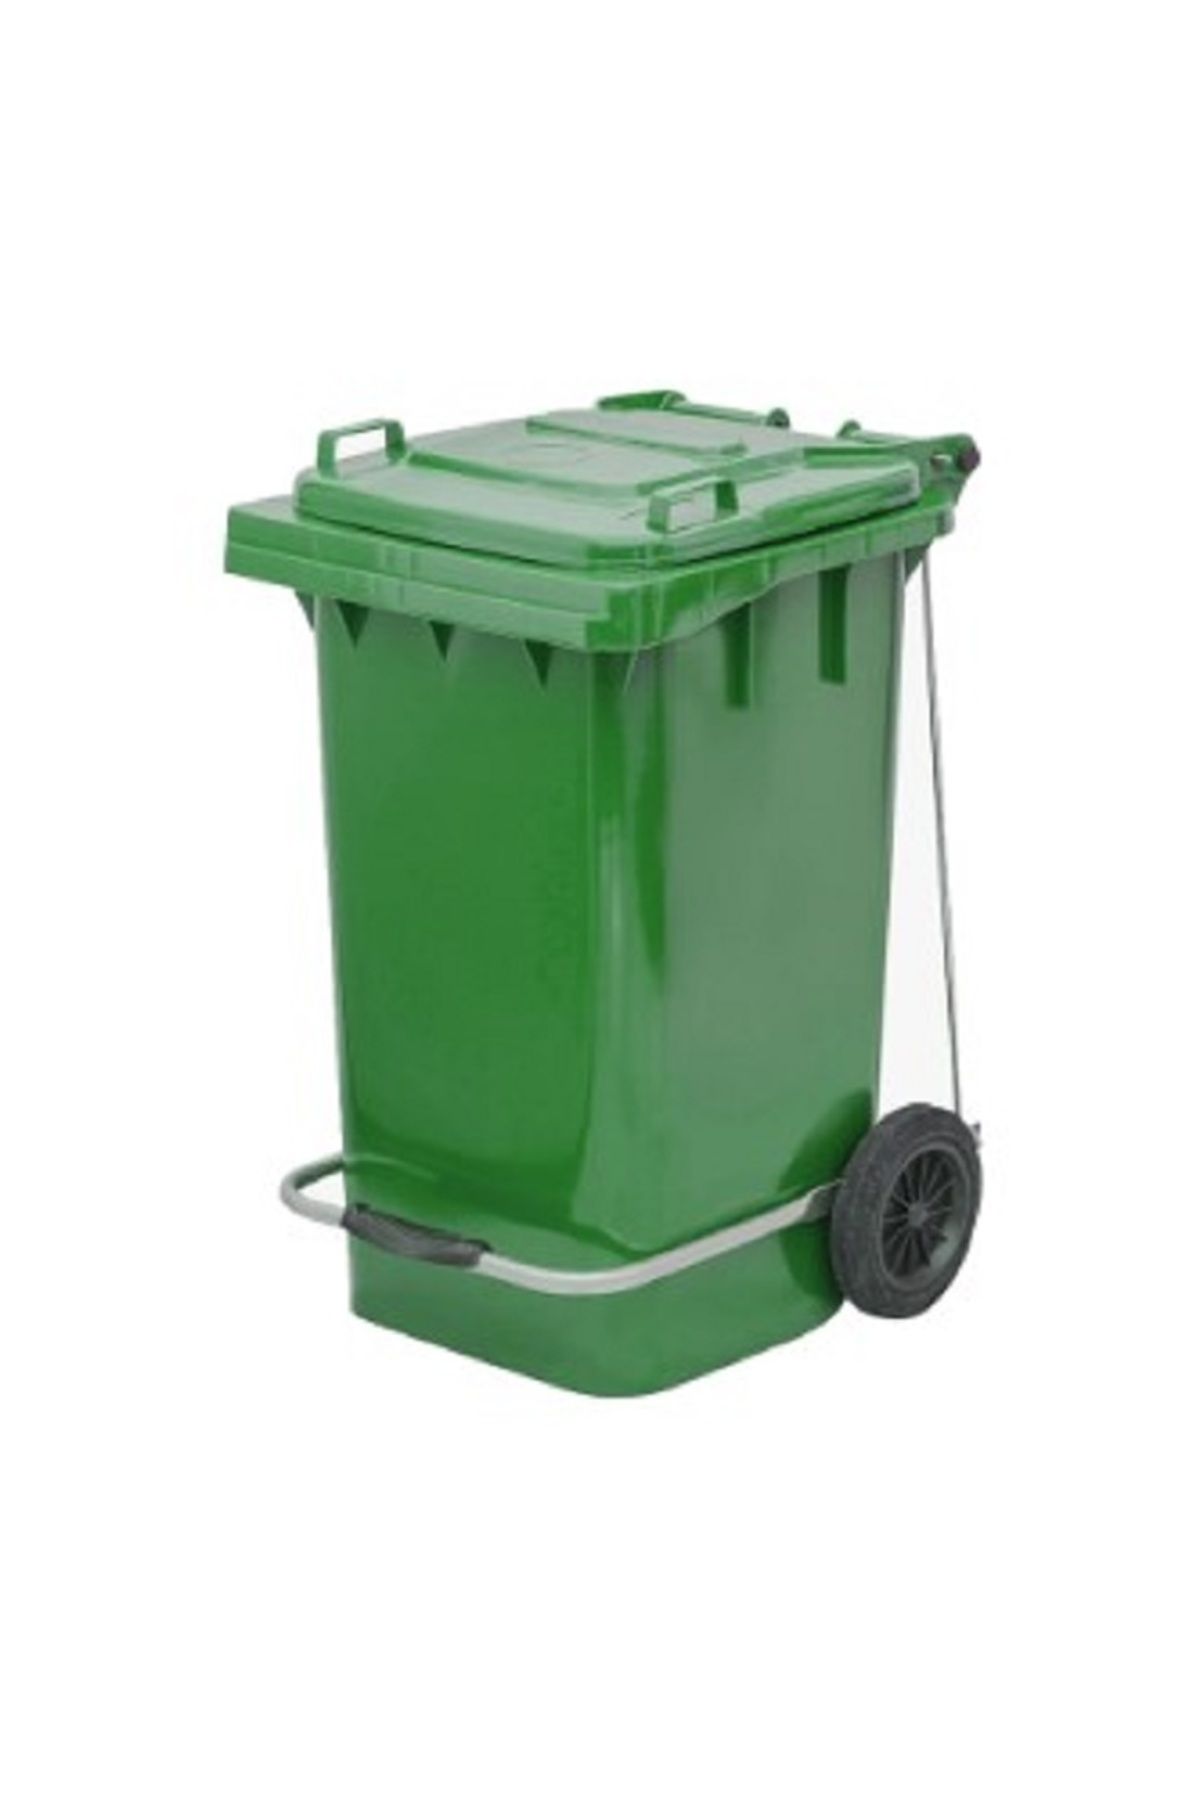 Genel Markalar Tekerlekli Demir Pedallı Sağlam Kapaklı Tutma Saplı Özel Çöp Konteyneri 100 Lt ( Yeşil ) Büyük Boy